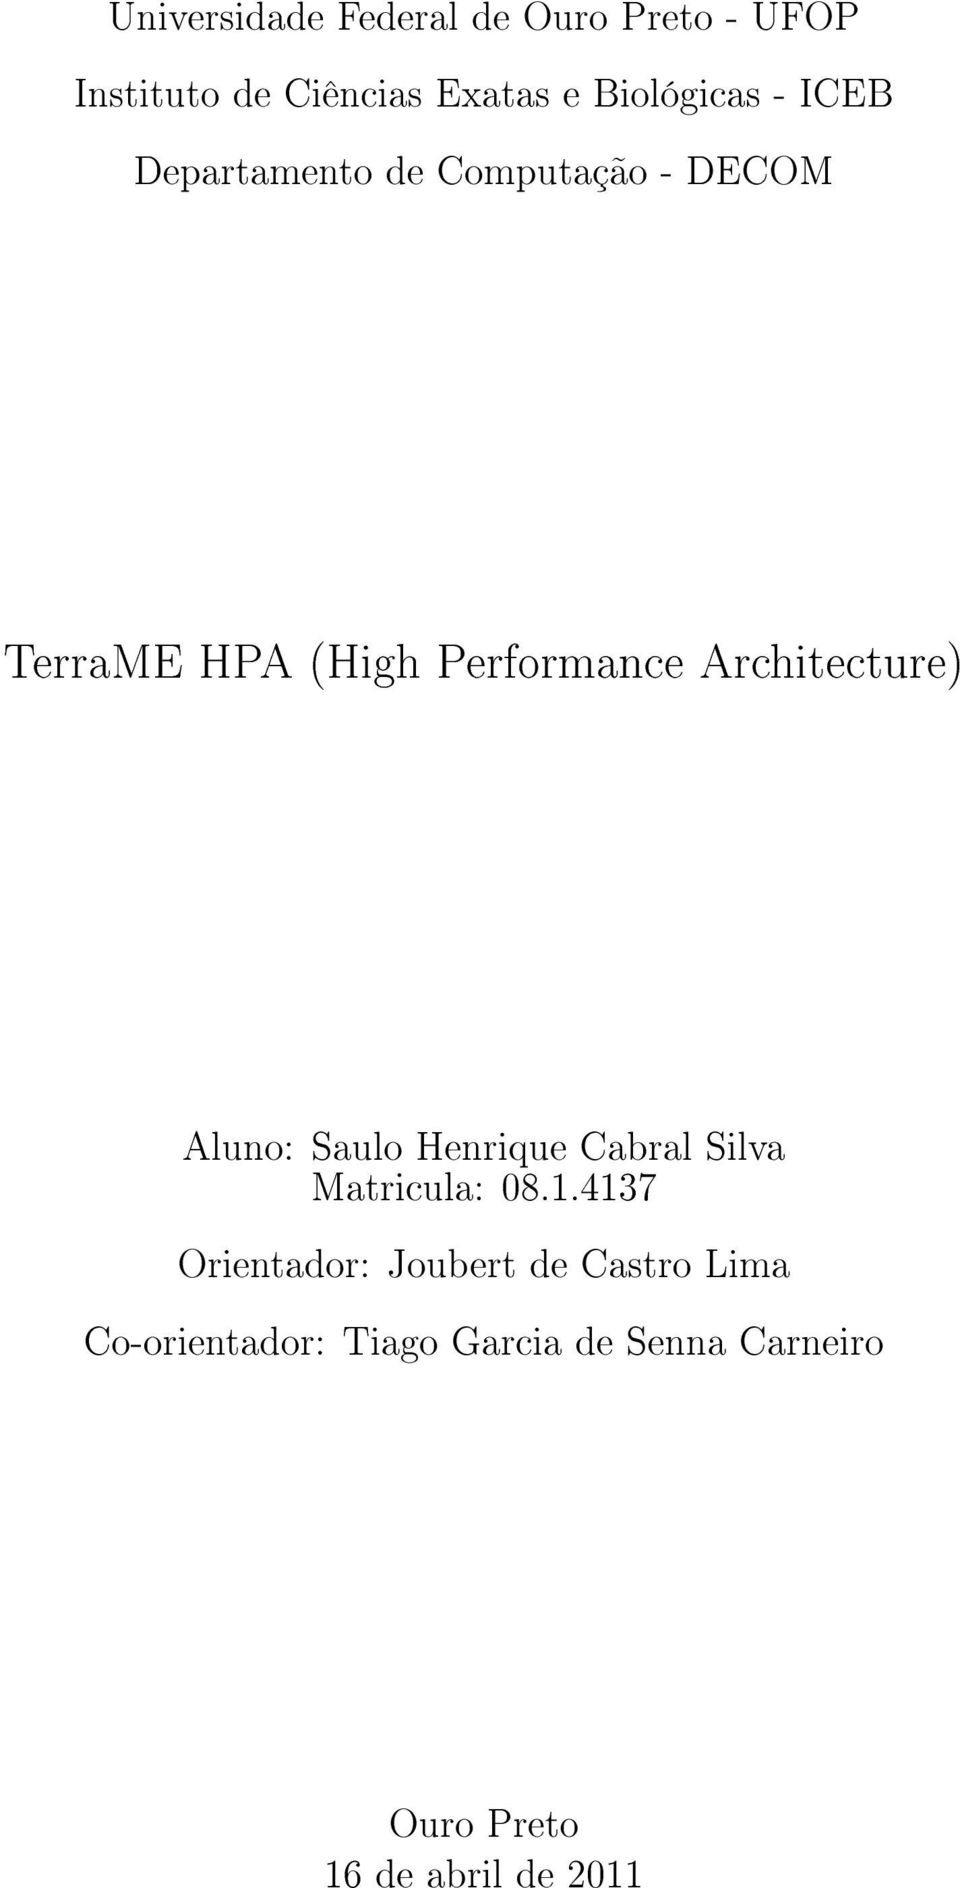 Architecture) Aluno: Saulo Henrique Cabral Silva Matricula: 08.1.